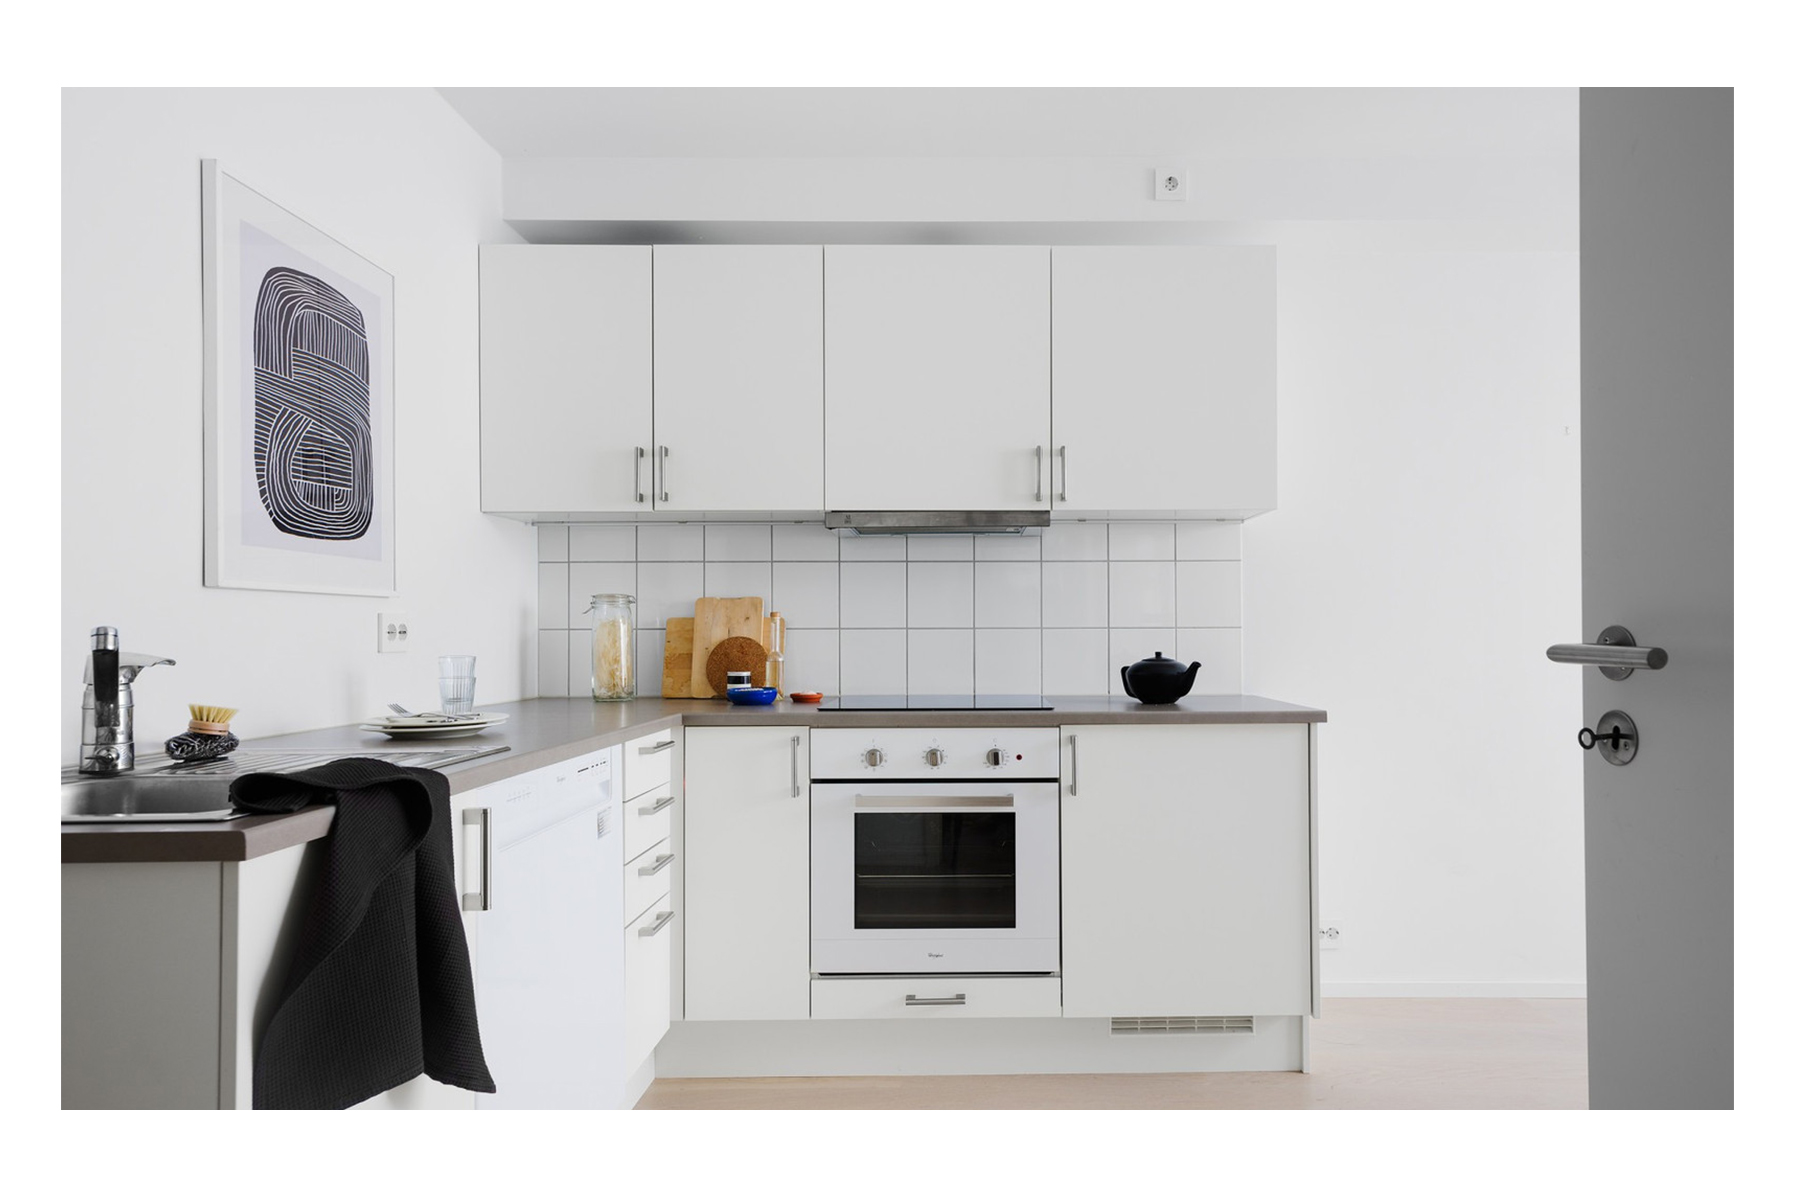 Kjøkkeninnredning i høy standard med hvitevarer fra Whirlpool og Røroshetta. Integrert kjøleskap med fryser og frittstående oppvaskmaskin. 